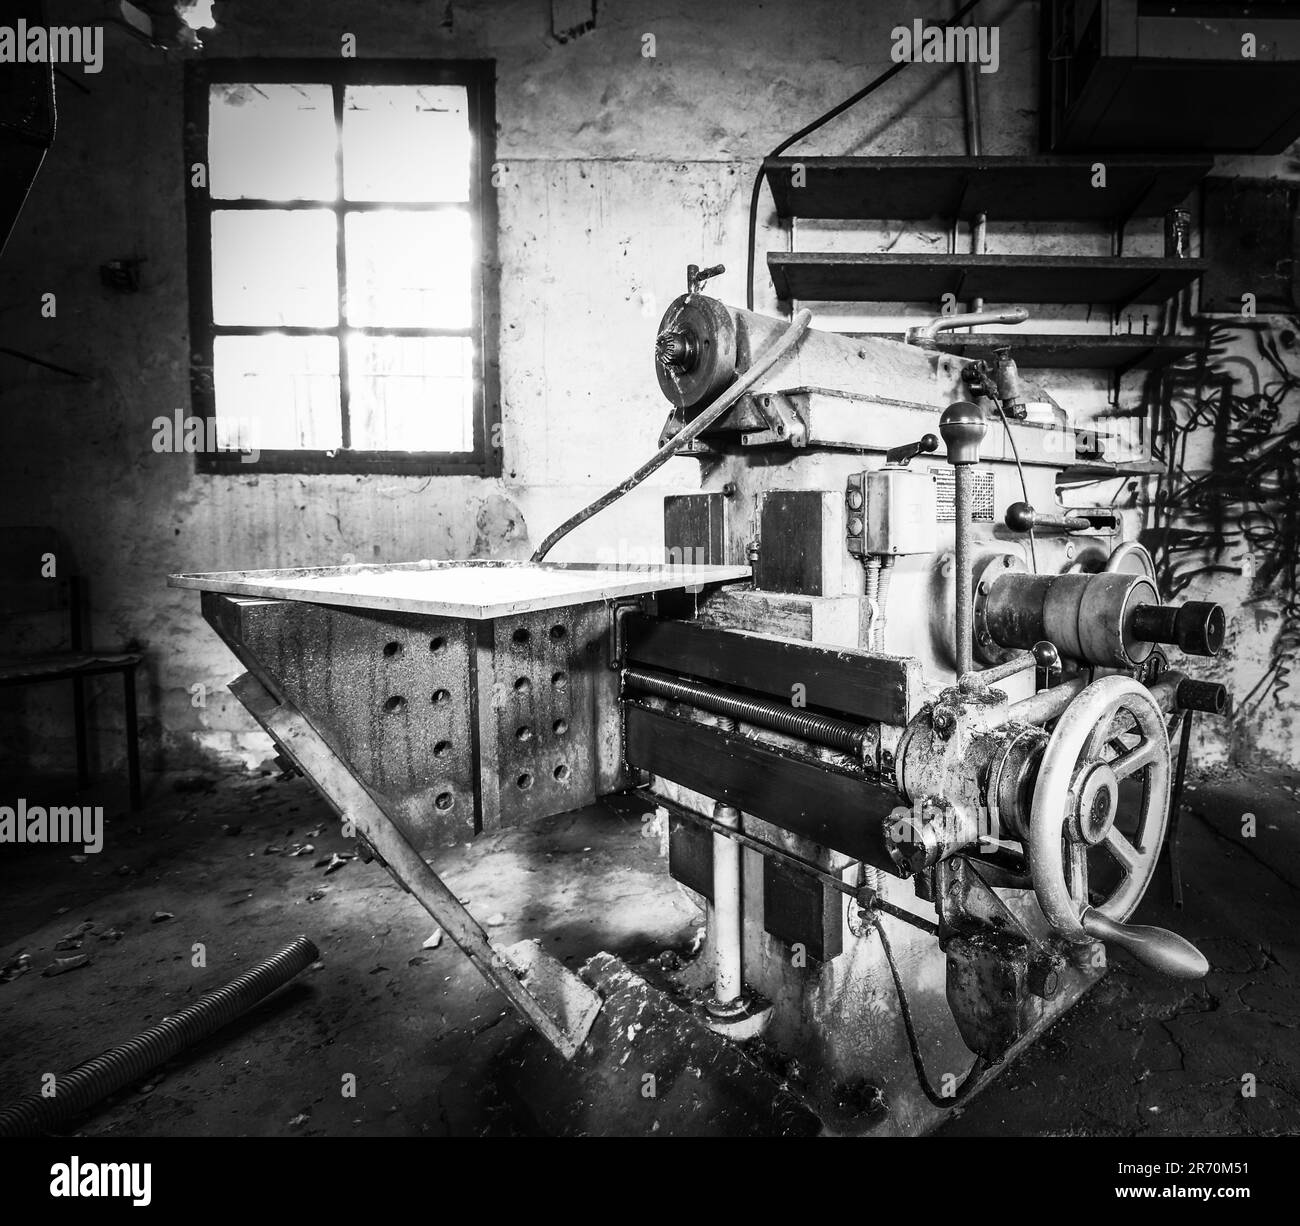 macchinari invecchiati in un impianto industriale Foto Stock